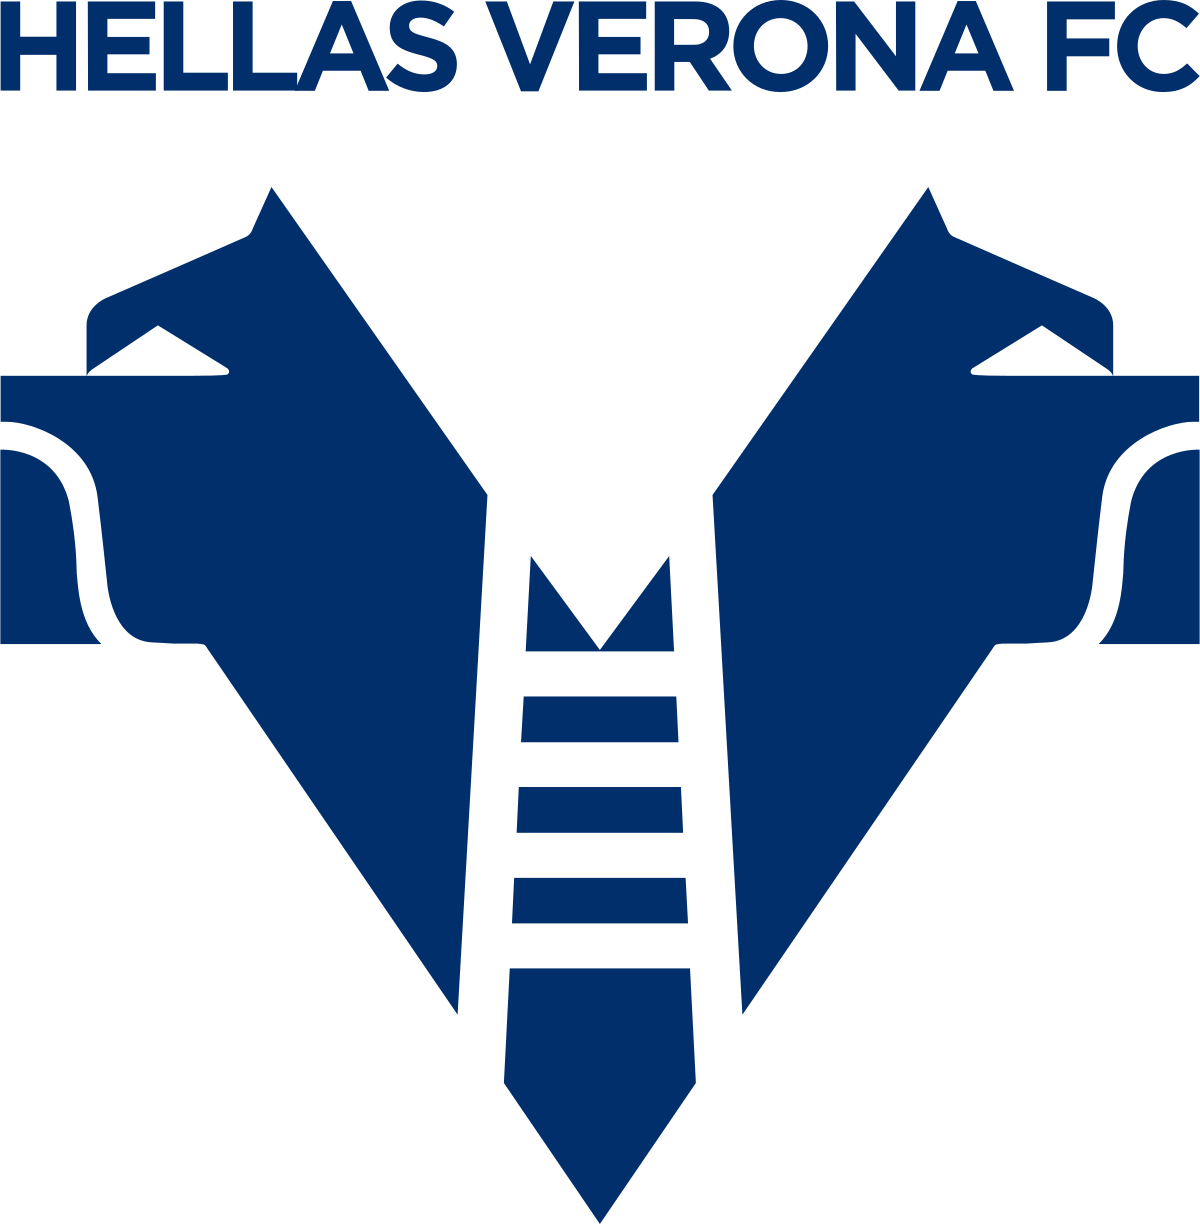 Il nuovo direttore sportivo del Verona-Hellas è Francesco Marroccu